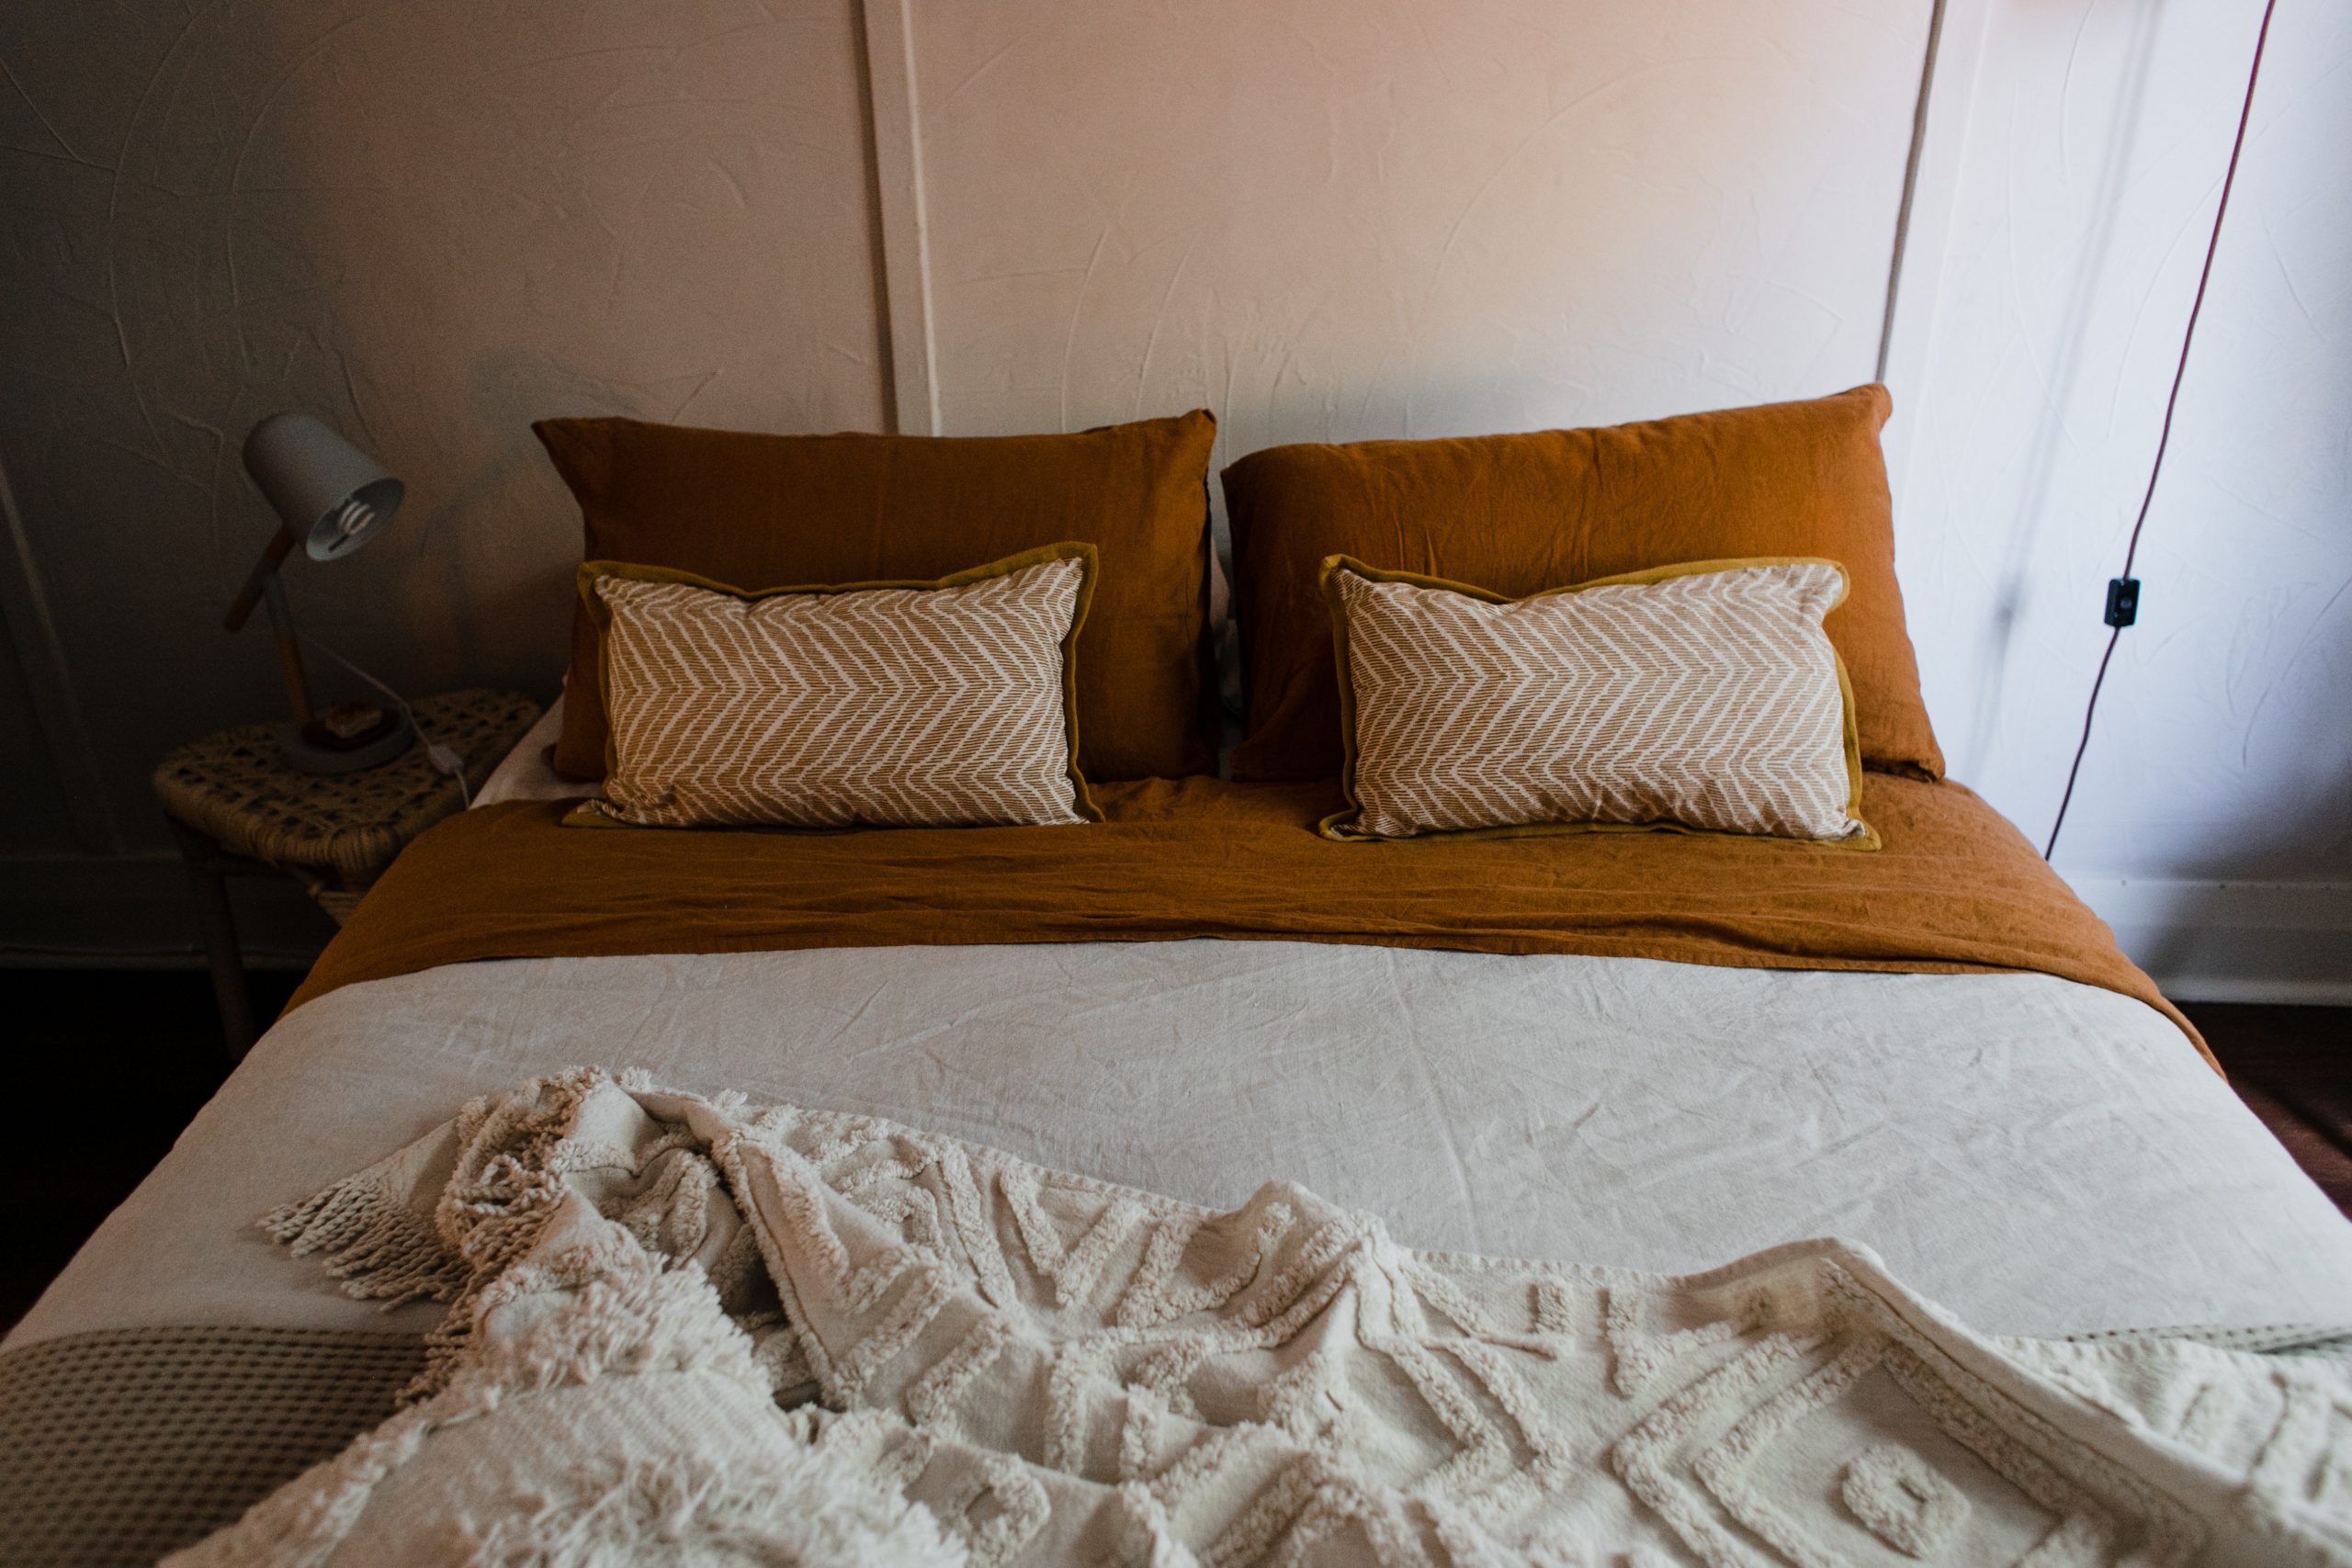 En kugledyne en dyne, der er designet til at give vægt og tryk for at hjælpe dig med at sove bedre. - Lokalhistorie Brøndby Strand